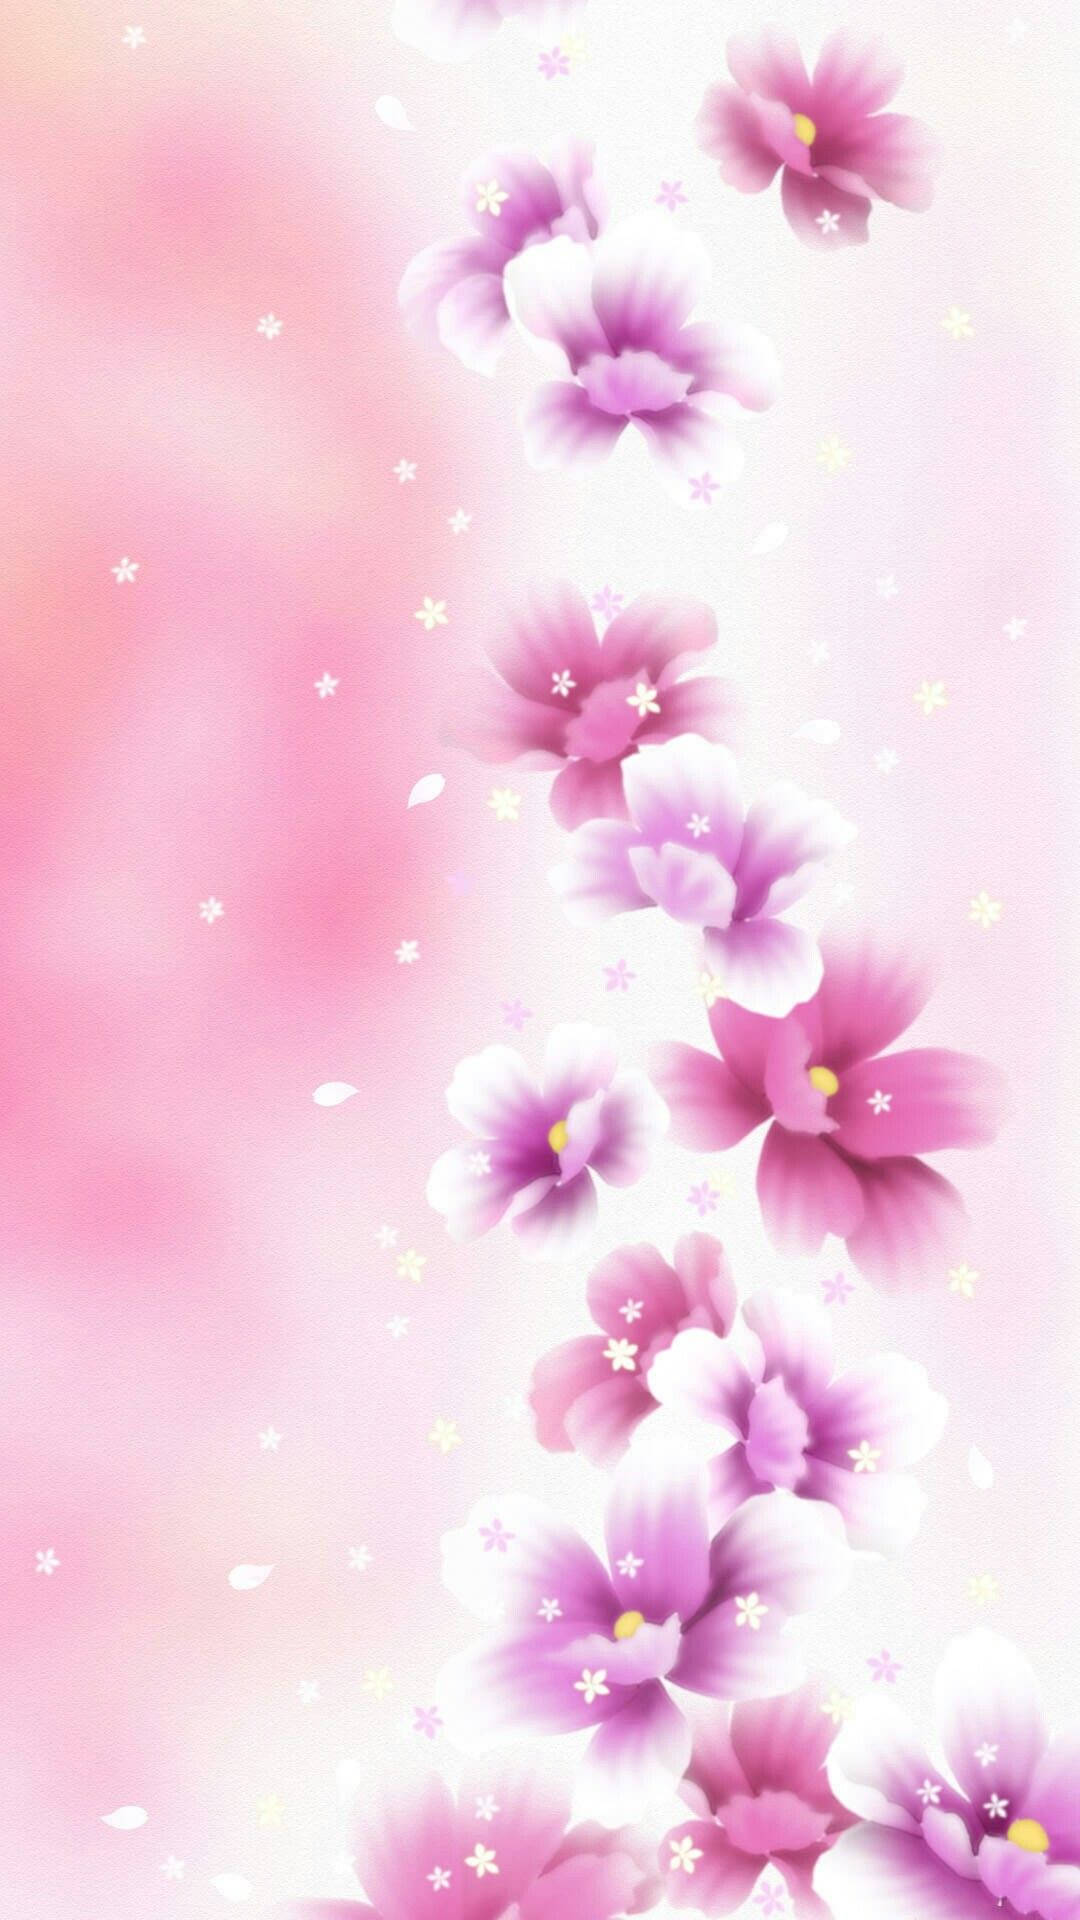 Enchanting Beauty In Purple - Cute Floral Bliss Wallpaper